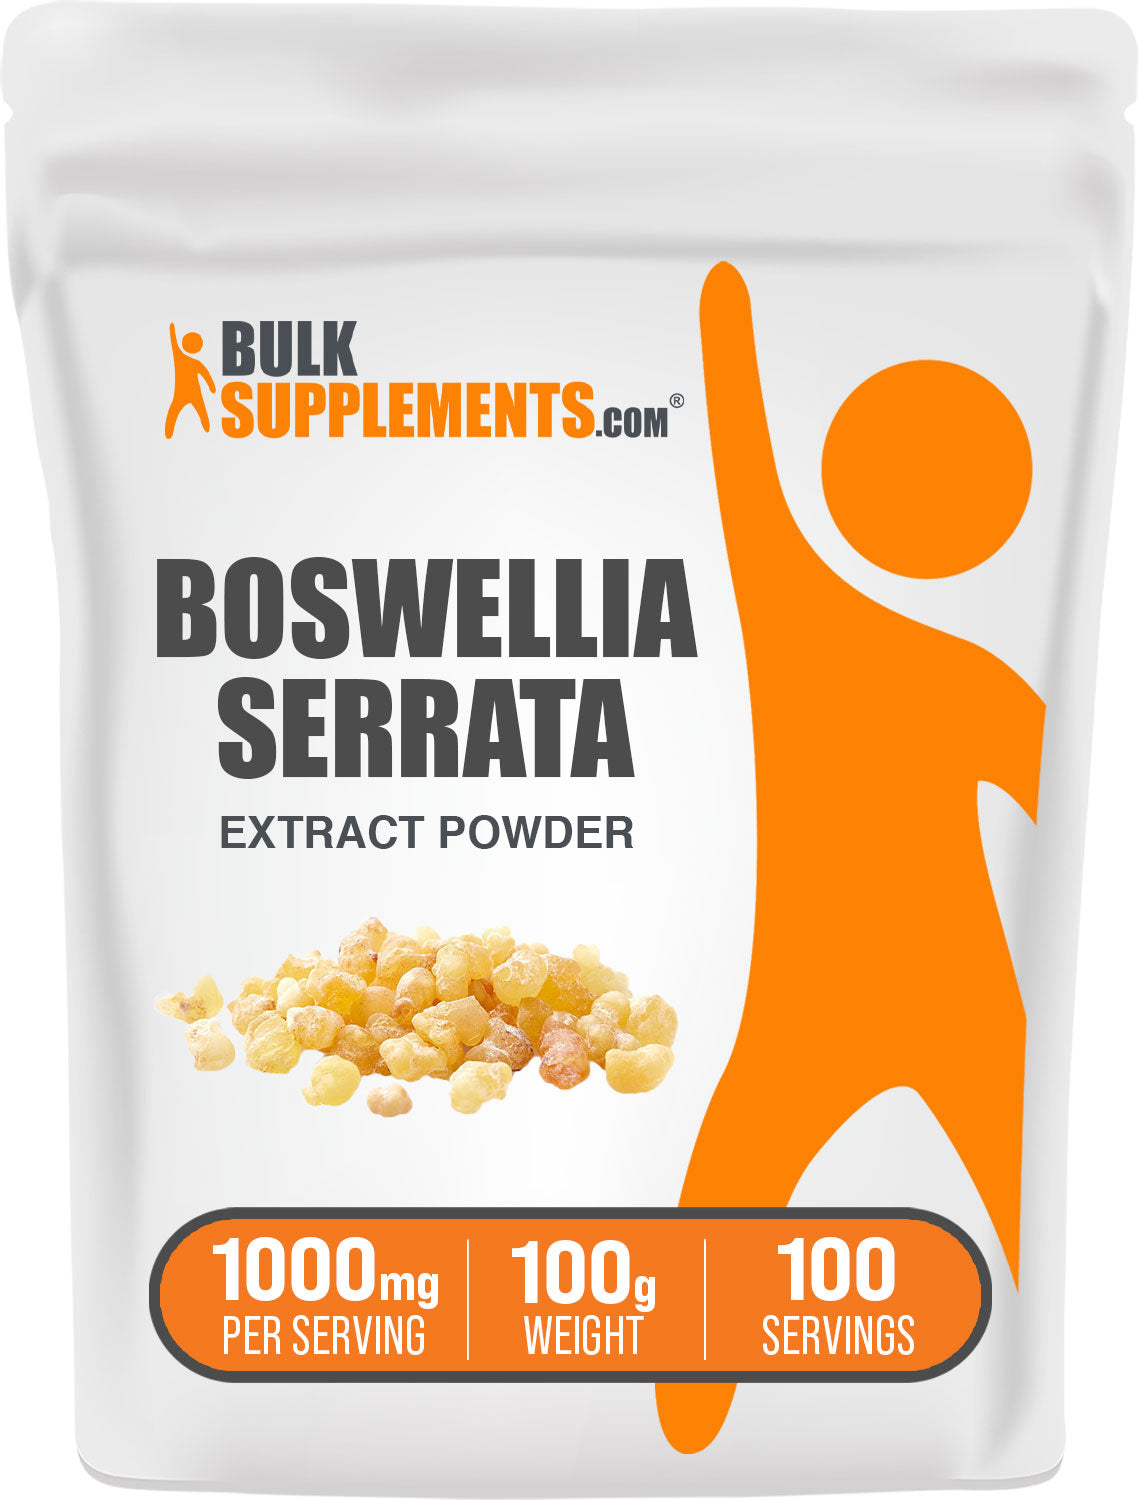 100g of boswellia serrata